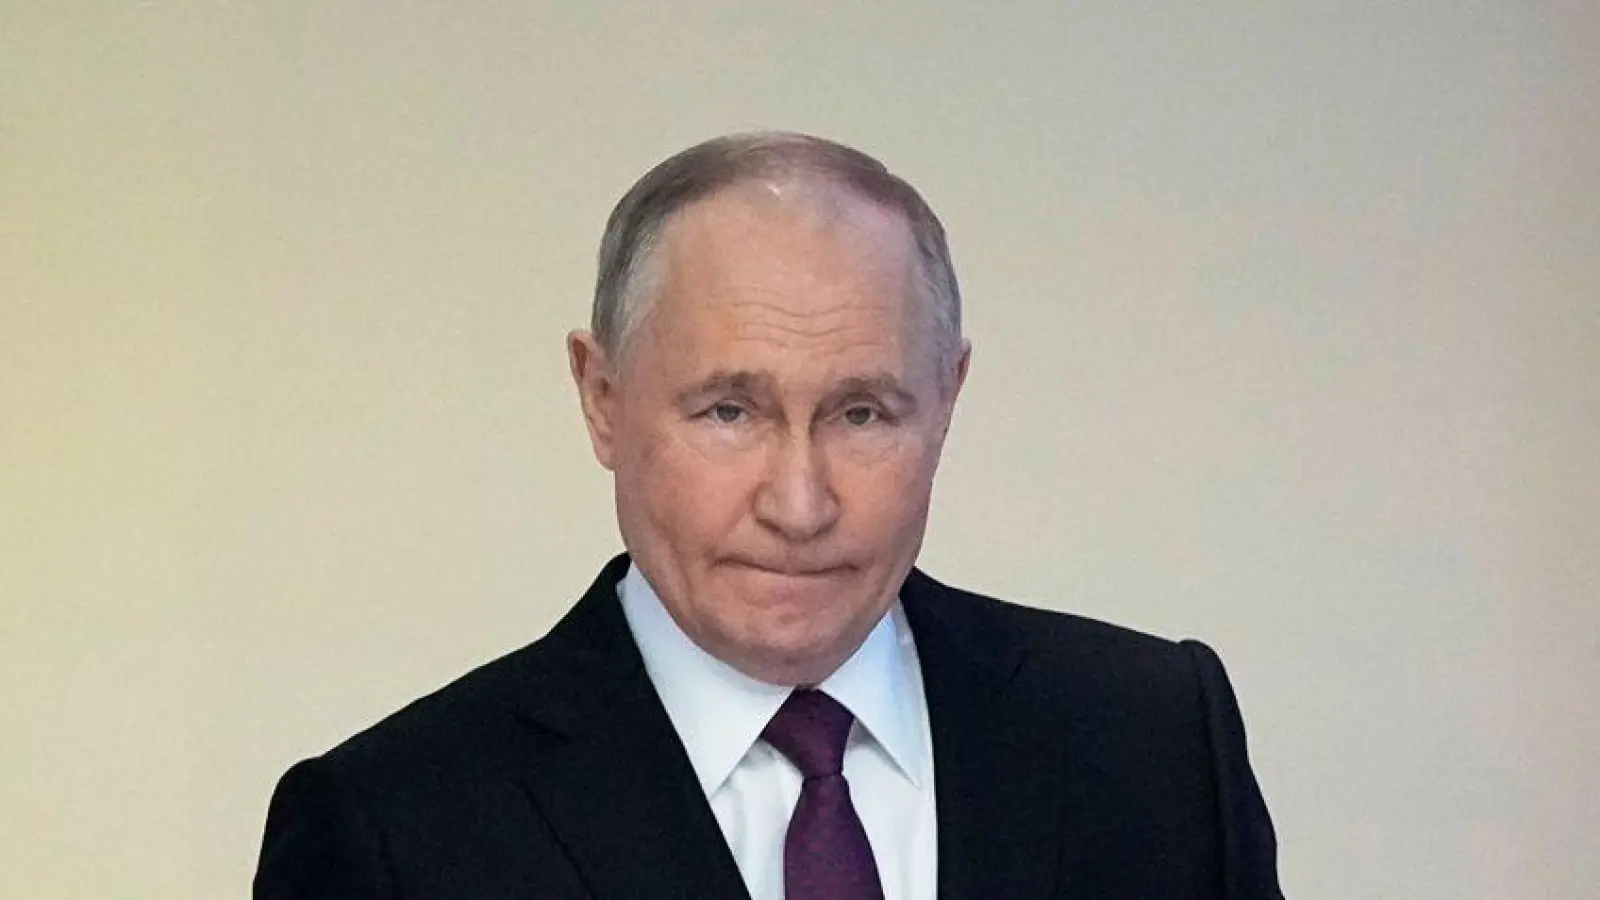 Putins Russland ist mittlerweile mehr als nur ein autoritärer Staat, sagt der russische Politikwissenschaftler Andrej Kolesnikow: „Es gibt definitiv Elemente von Totalitarismus oder Neototalitarismus.“ (Foto: Alexander Zemlianichenko/AP/dpa)